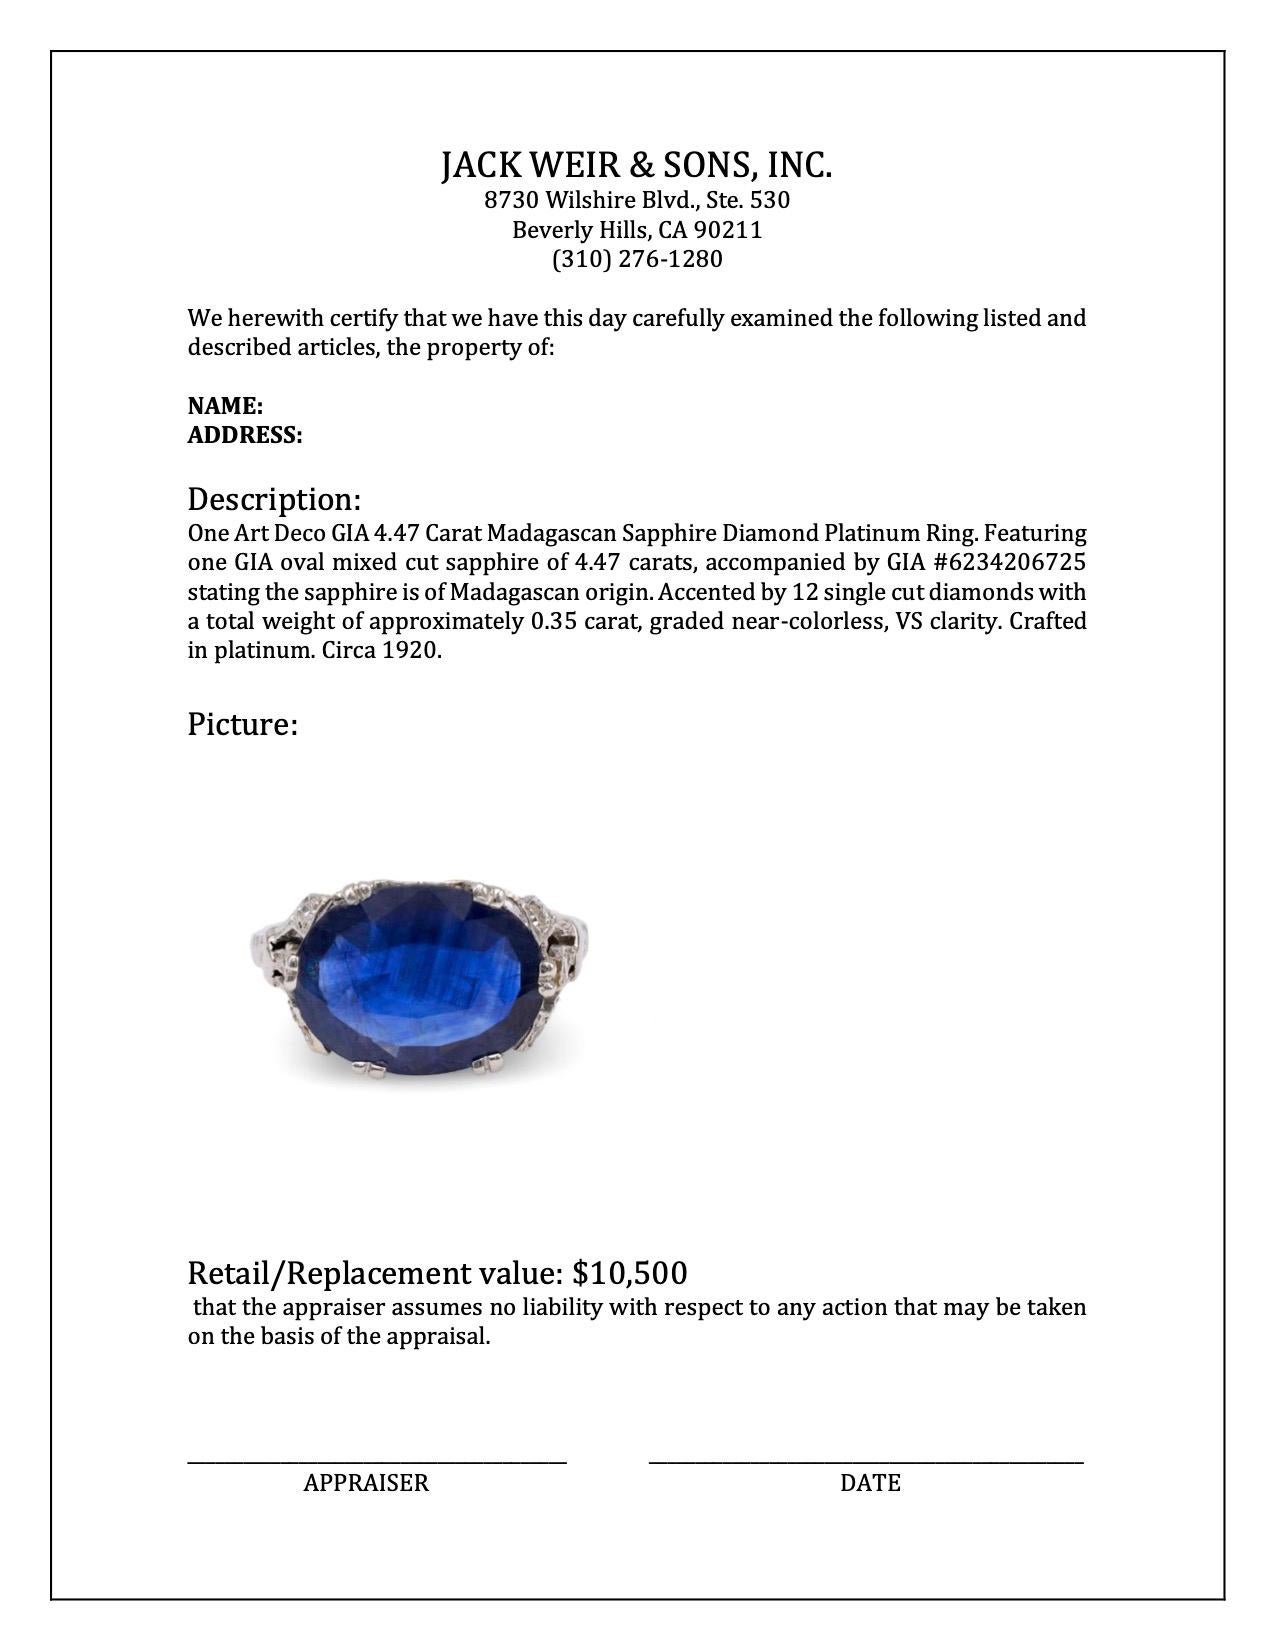 Art Deco GIA 4.47 Carat Madagascan Sapphire Diamond Platinum Ring 2